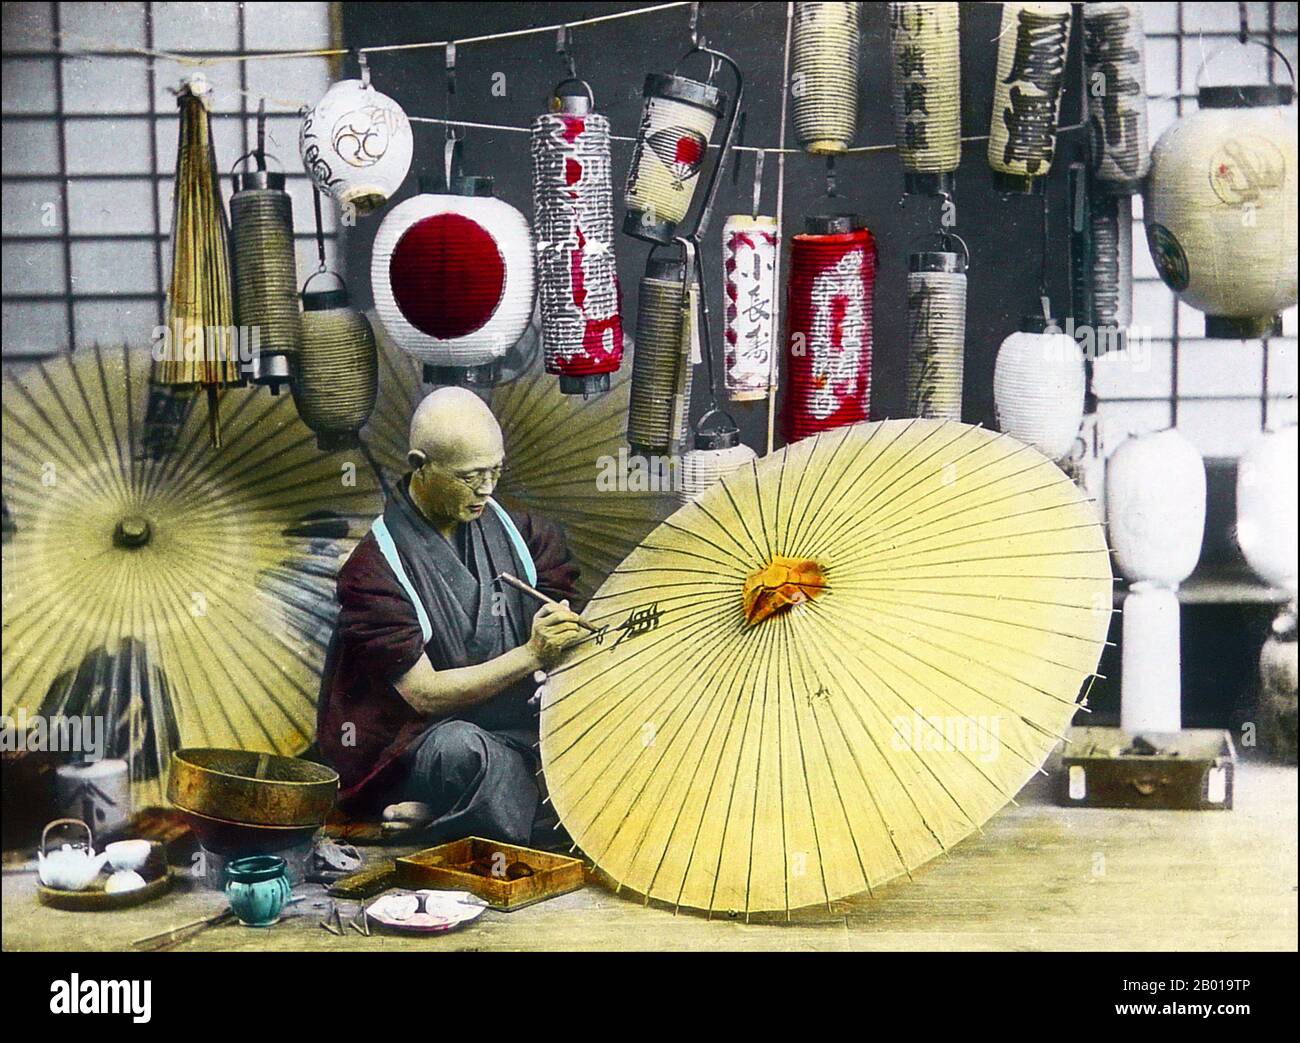 Japan: Ein Regenschirmhersteller malt einen Sonnenschirm. Foto von T. Enami (1859-1929), c. 1900-1910. T. Enami (Enami Nobukuni) war der Handelsname eines berühmten Meiji-Fotografen. Der T. seines Handelsnamens soll für Toshi gestanden haben, obwohl er ihn nie auf einem persönlichen oder geschäftlichen Dokument geschrieben hat. Geboren in Edo (heute Tokio) während der Bakumatsu-Ära, war Enami zuerst Schüler und dann Assistent des bekannten Fotografen und Umgangssprache, Ogawa Kazumasa. Enami zog nach Yokohama und eröffnete 1892 ein Studio in der Benten-dōri (Benten Street). Stockfoto